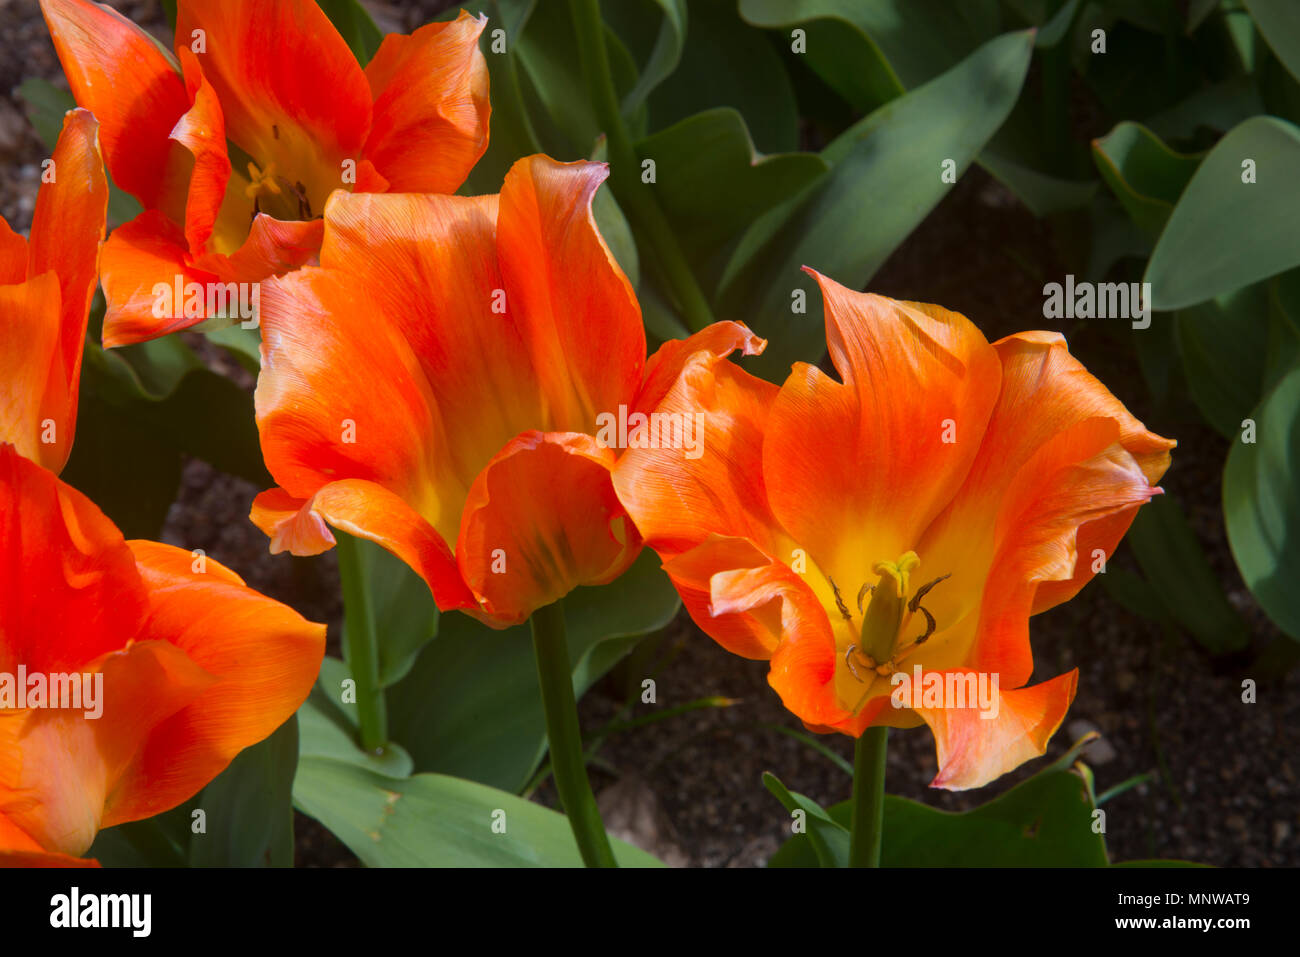 Tulip fiori, chiudere la vista. Foto Stock